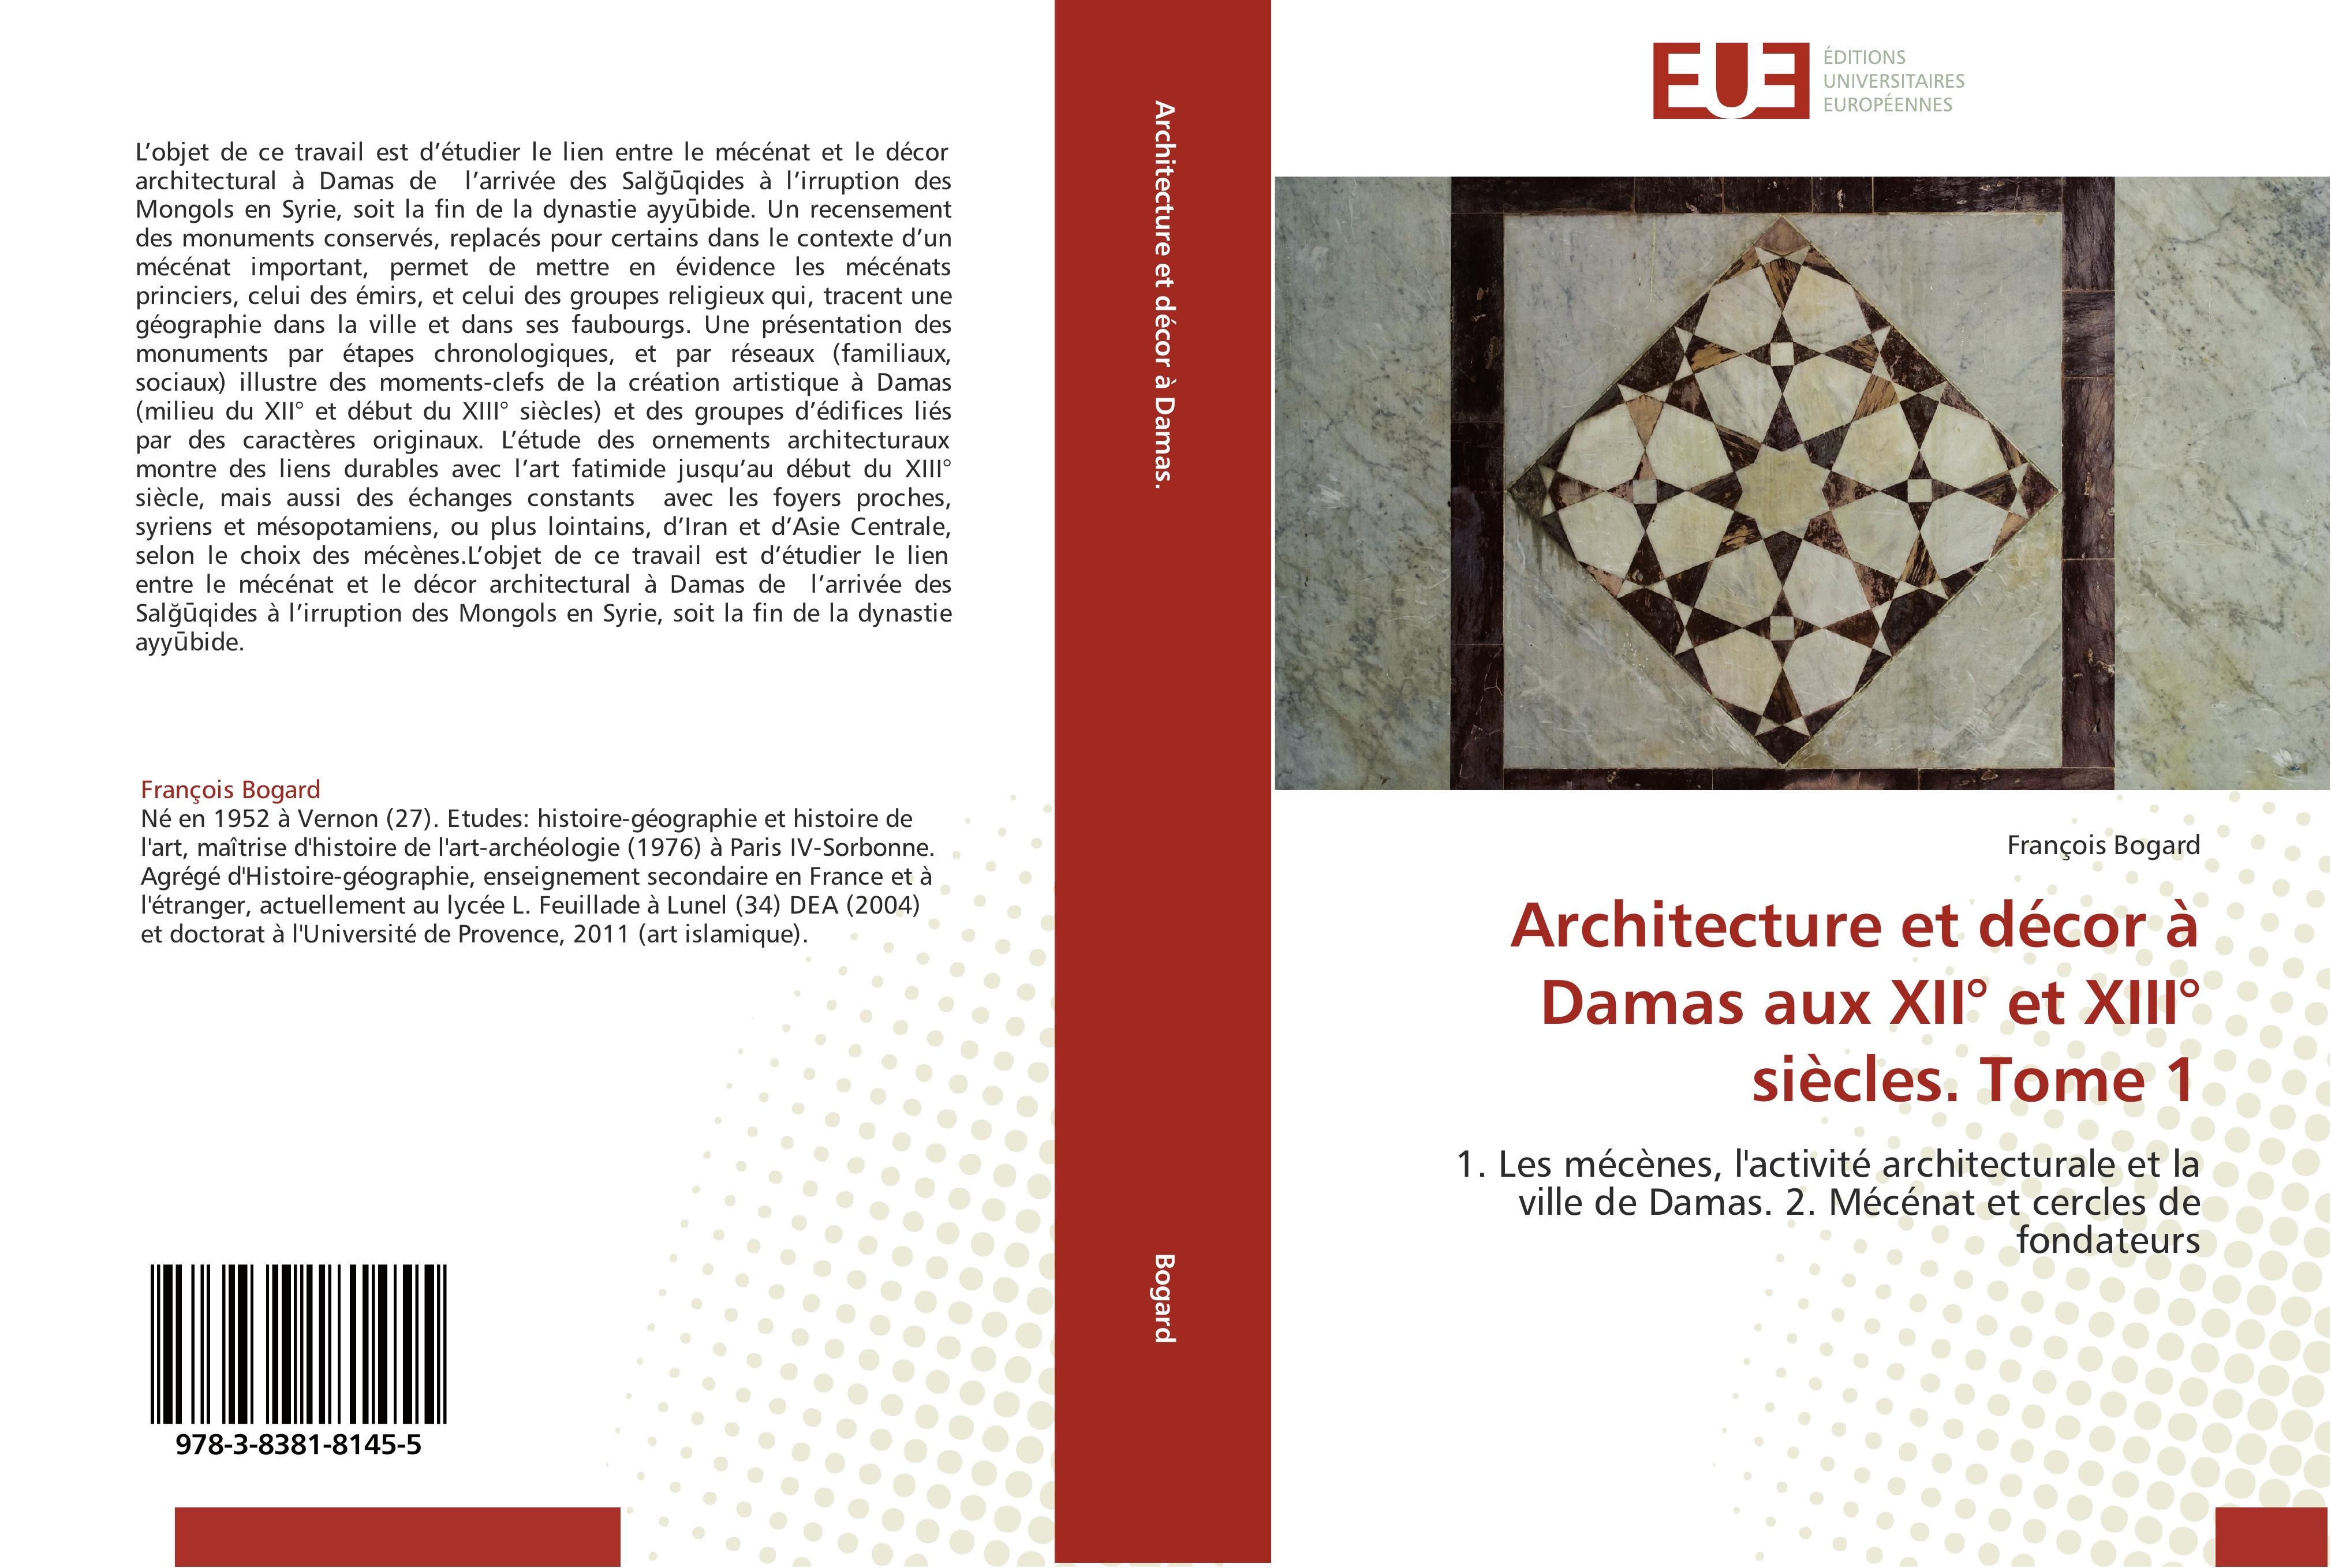 Architecture et décor à Damas aux XII° et XIII° siècles. Tome 1 - François Bogard